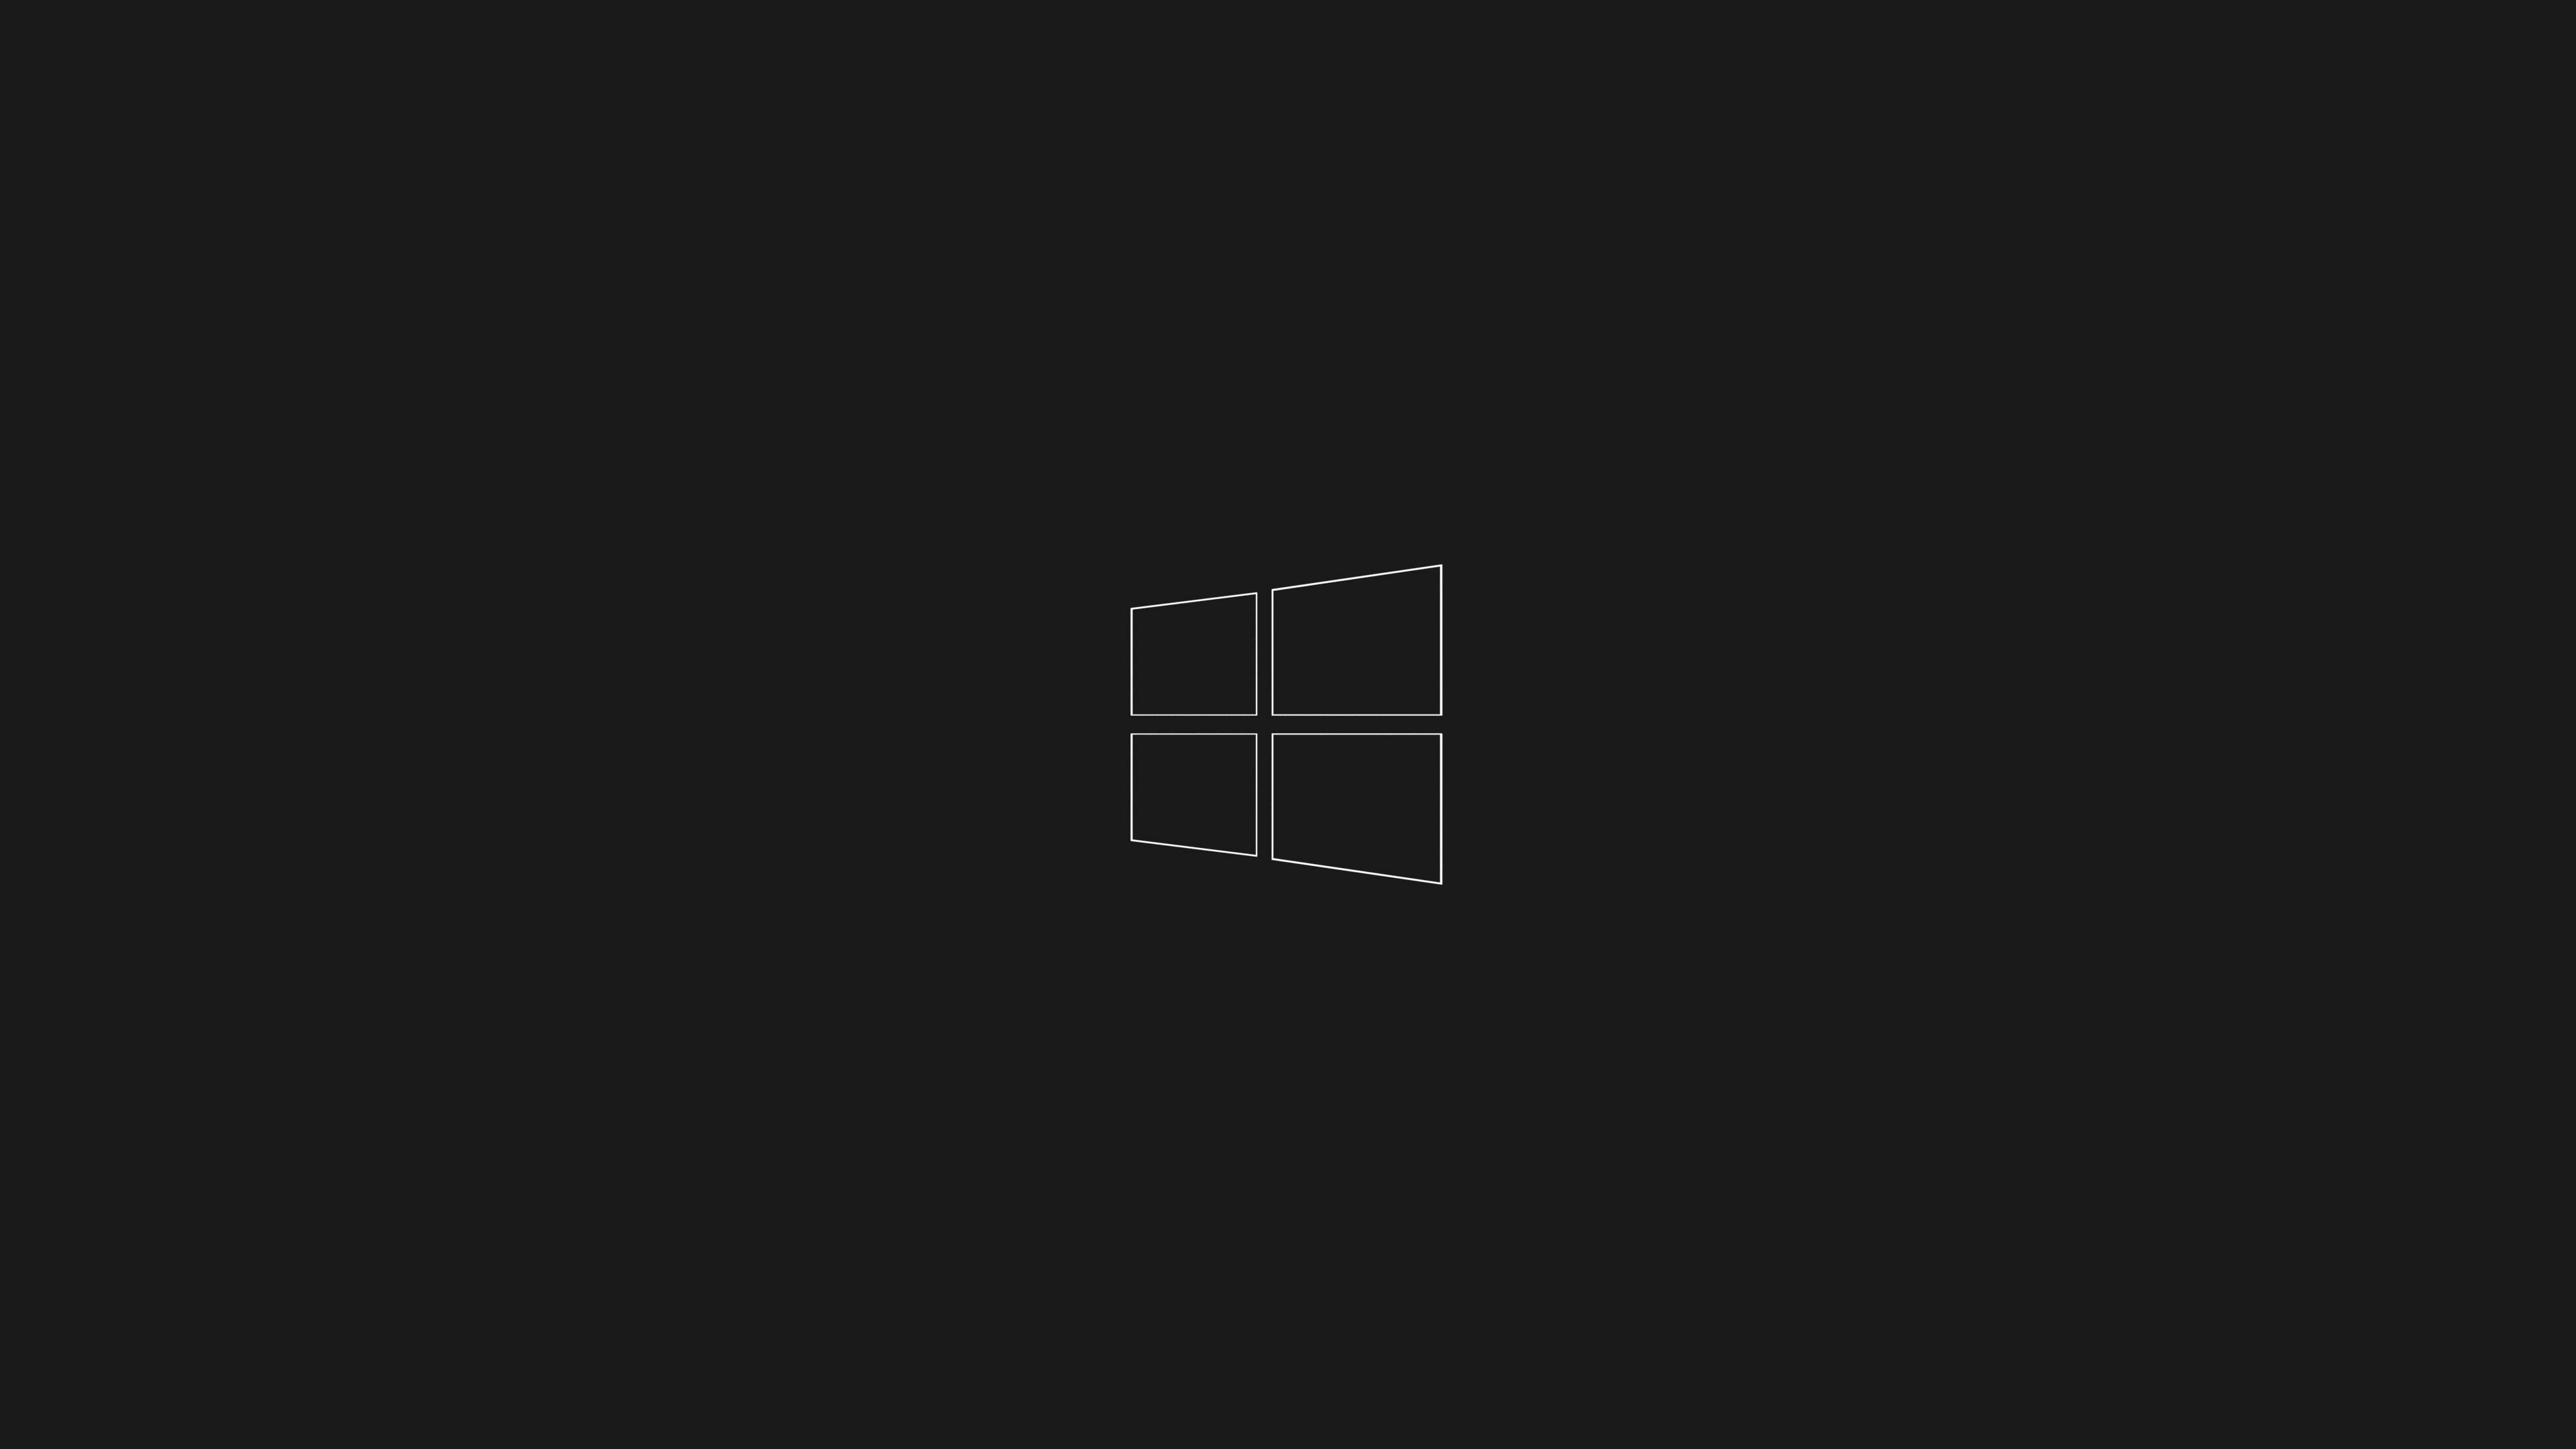 Download free Minimalist Windows 10 Hd Black Logo Wallpaper ...